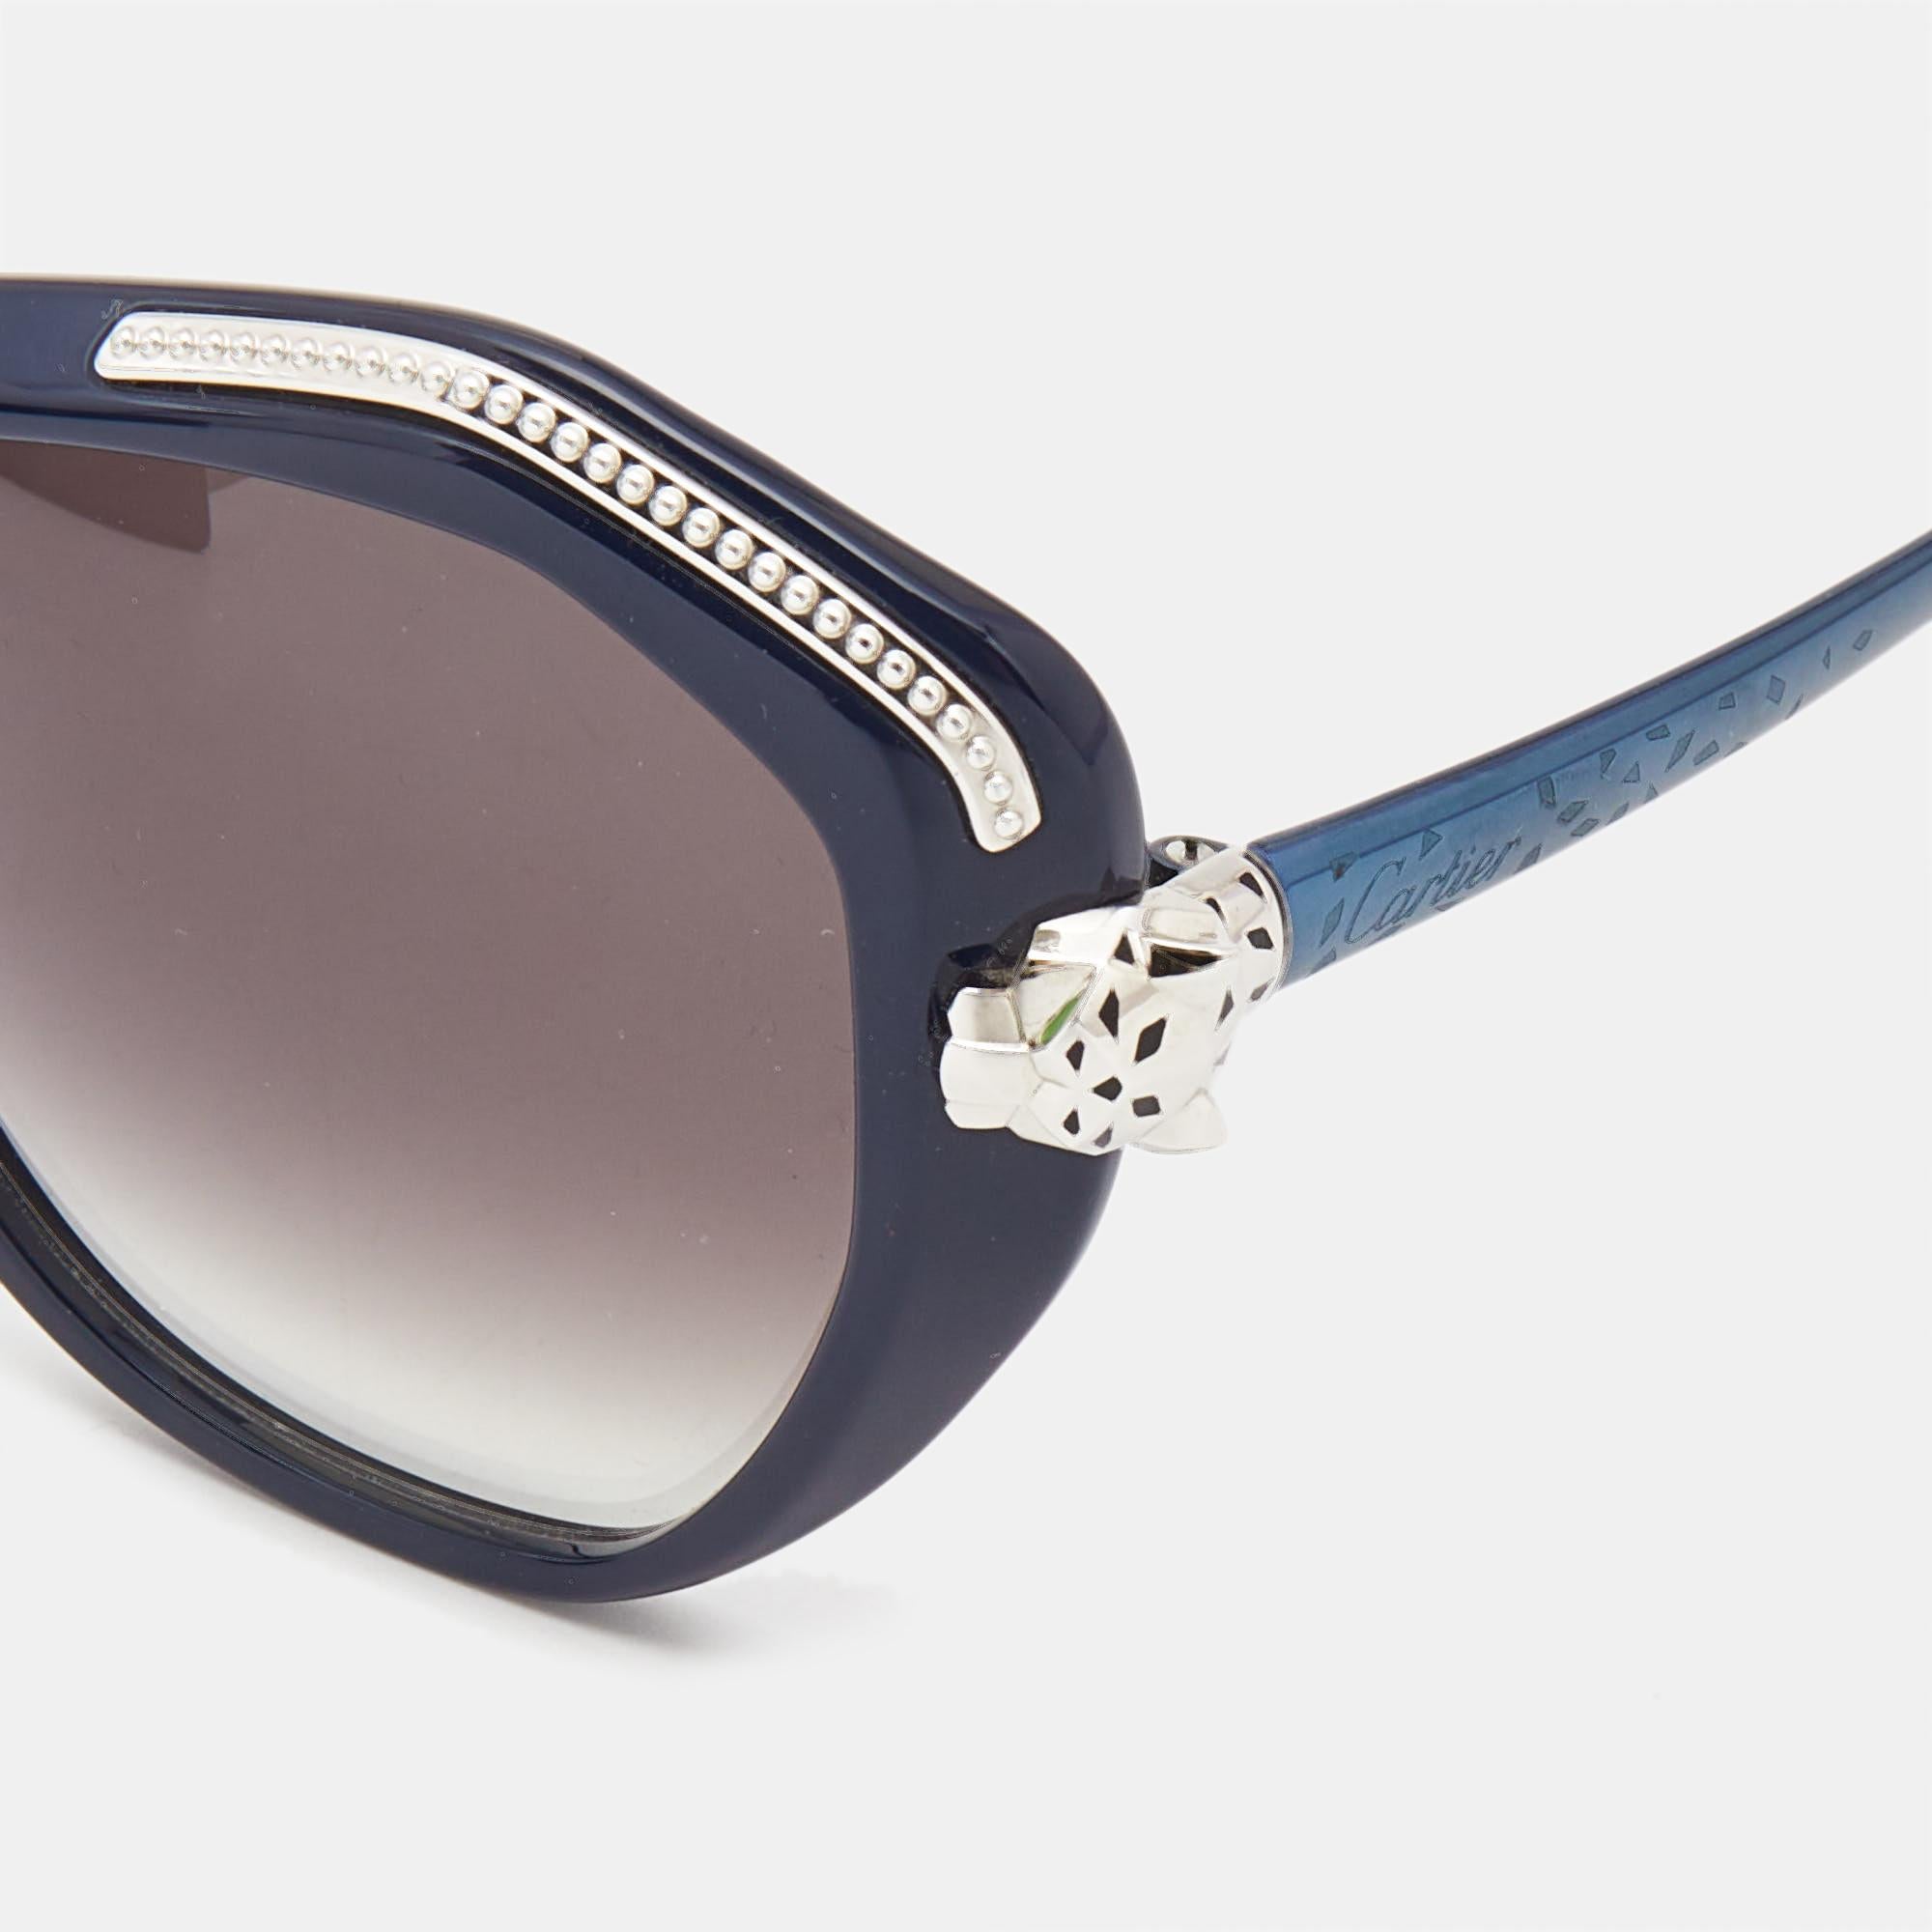 Nous voyons les détails sur cette exquise paire de lunettes de soleil de créateur fabriquée à partir de matériaux nobles. Les lunettes de soleil sont à la fois luxueuses et pratiques.

Comprend : Étui original